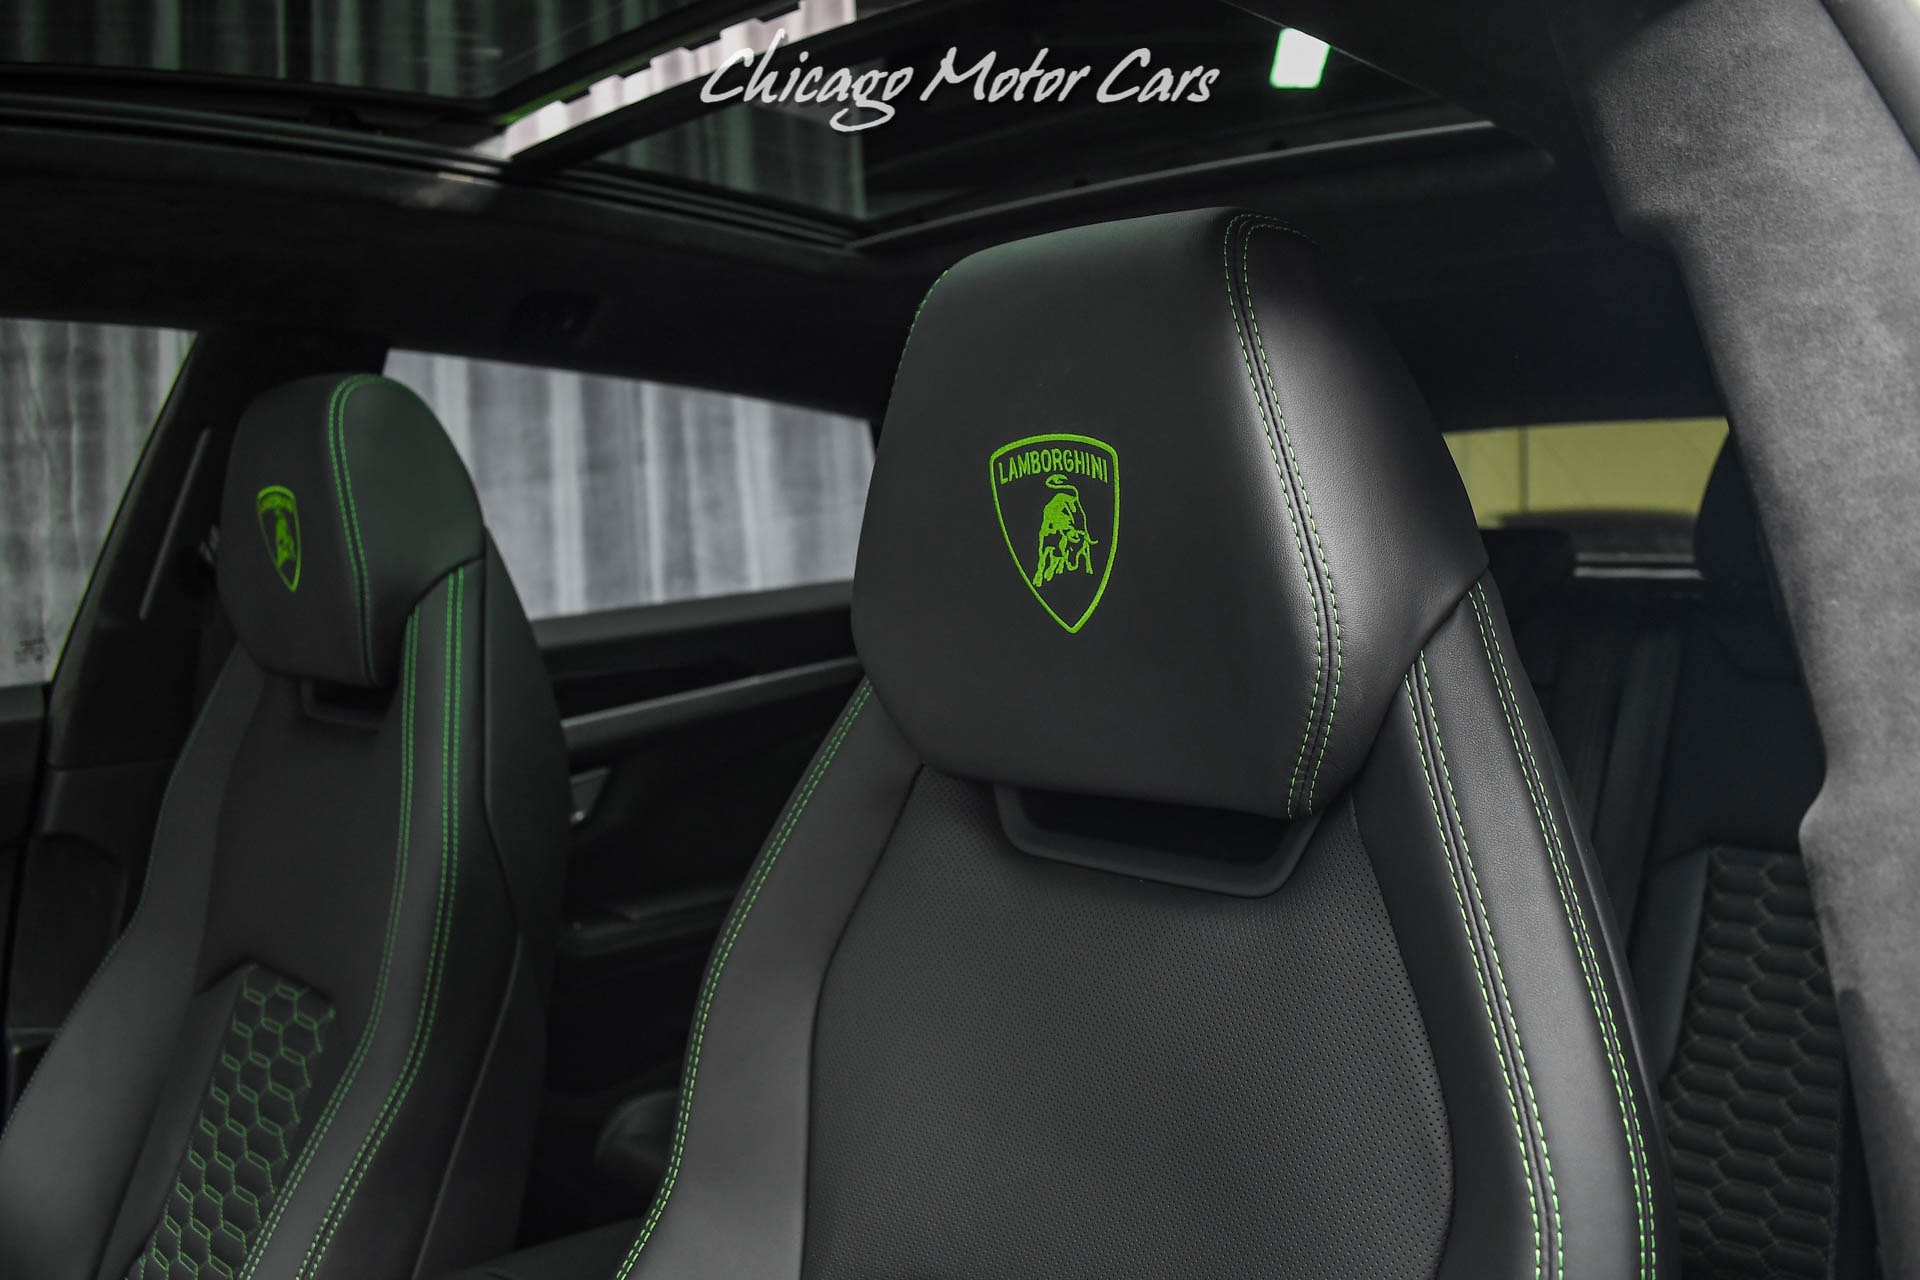 Used-2021-Lamborghini-Urus-SUV-Verde-Mantis-Pearl-NOVITEC-Widebody-Stunning-Build-HARD-LOADED